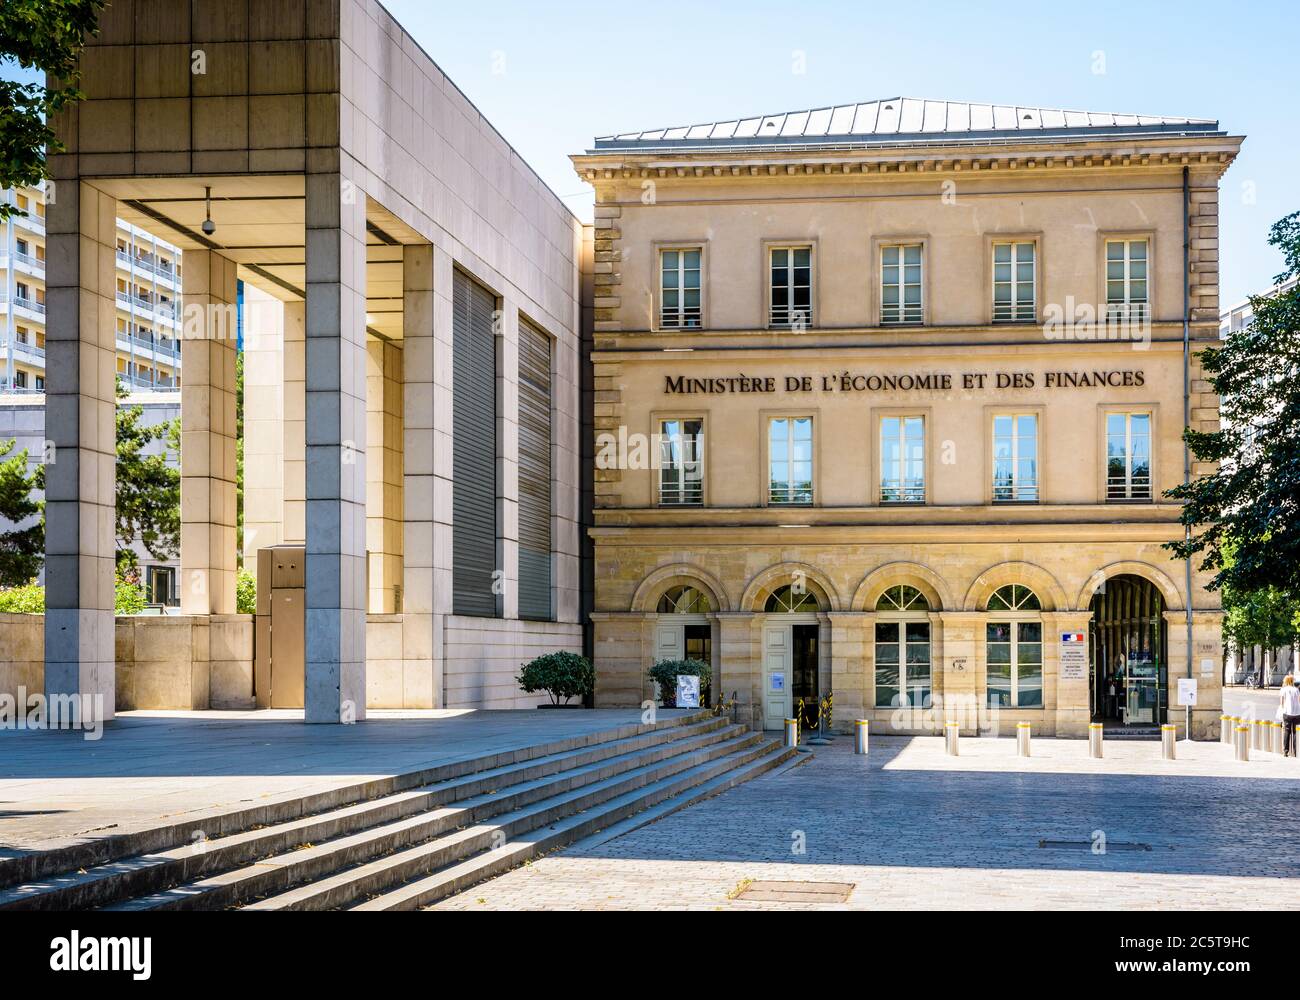 Vue de face du bâtiment de réception du Ministère de l'économie et des finances dans le quartier Bercy à Paris, France. Banque D'Images